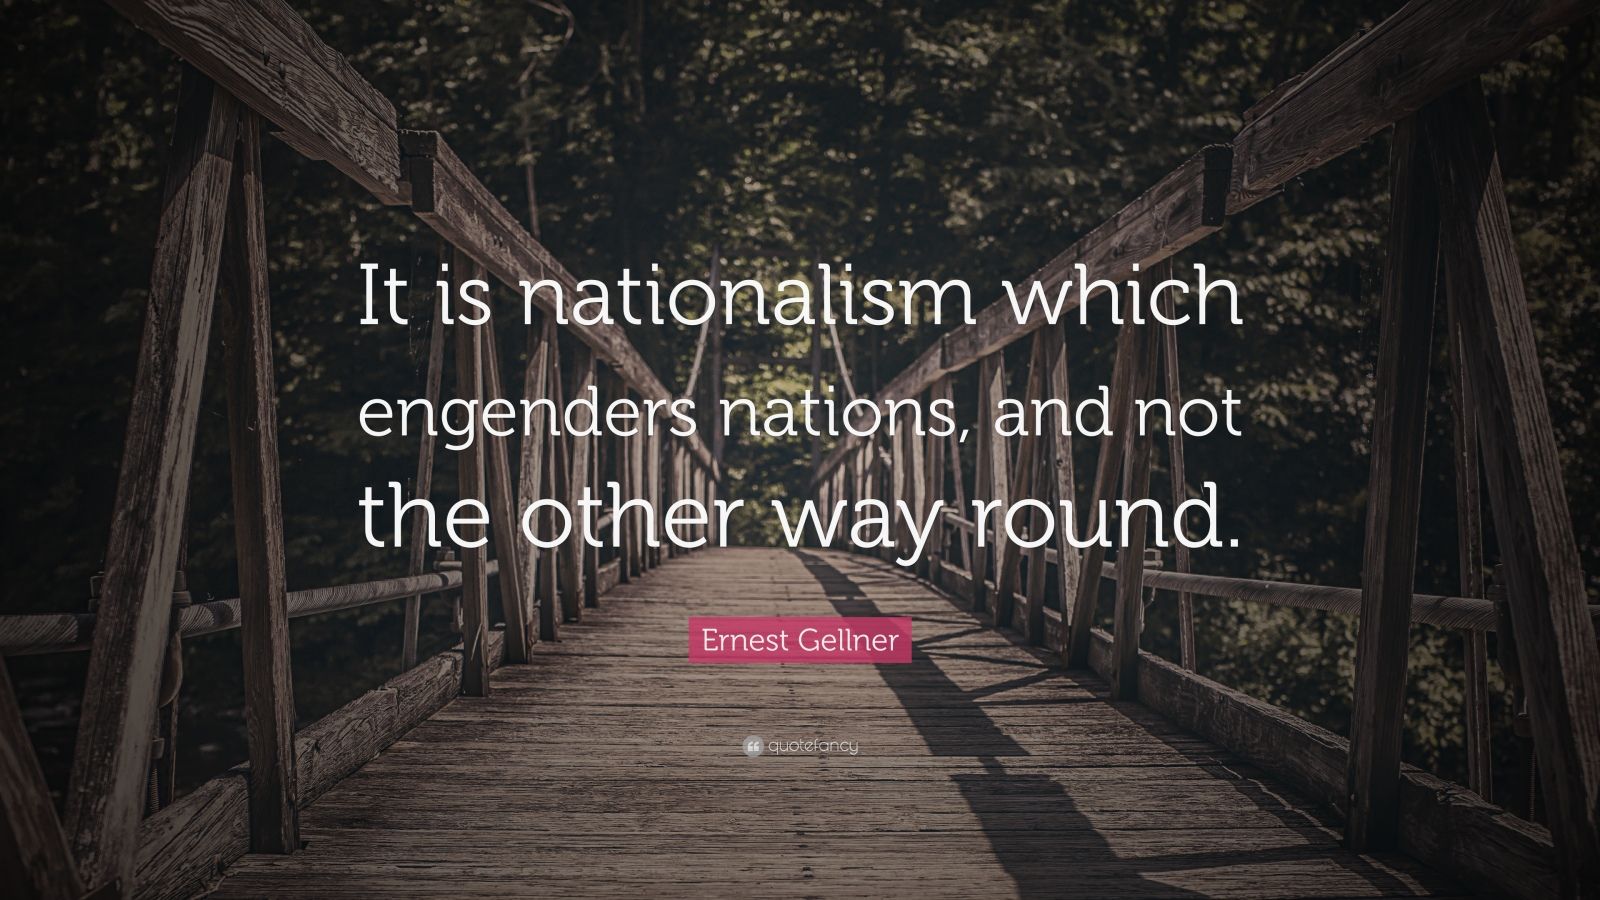 gellner ernest 1983 nations and nationalism